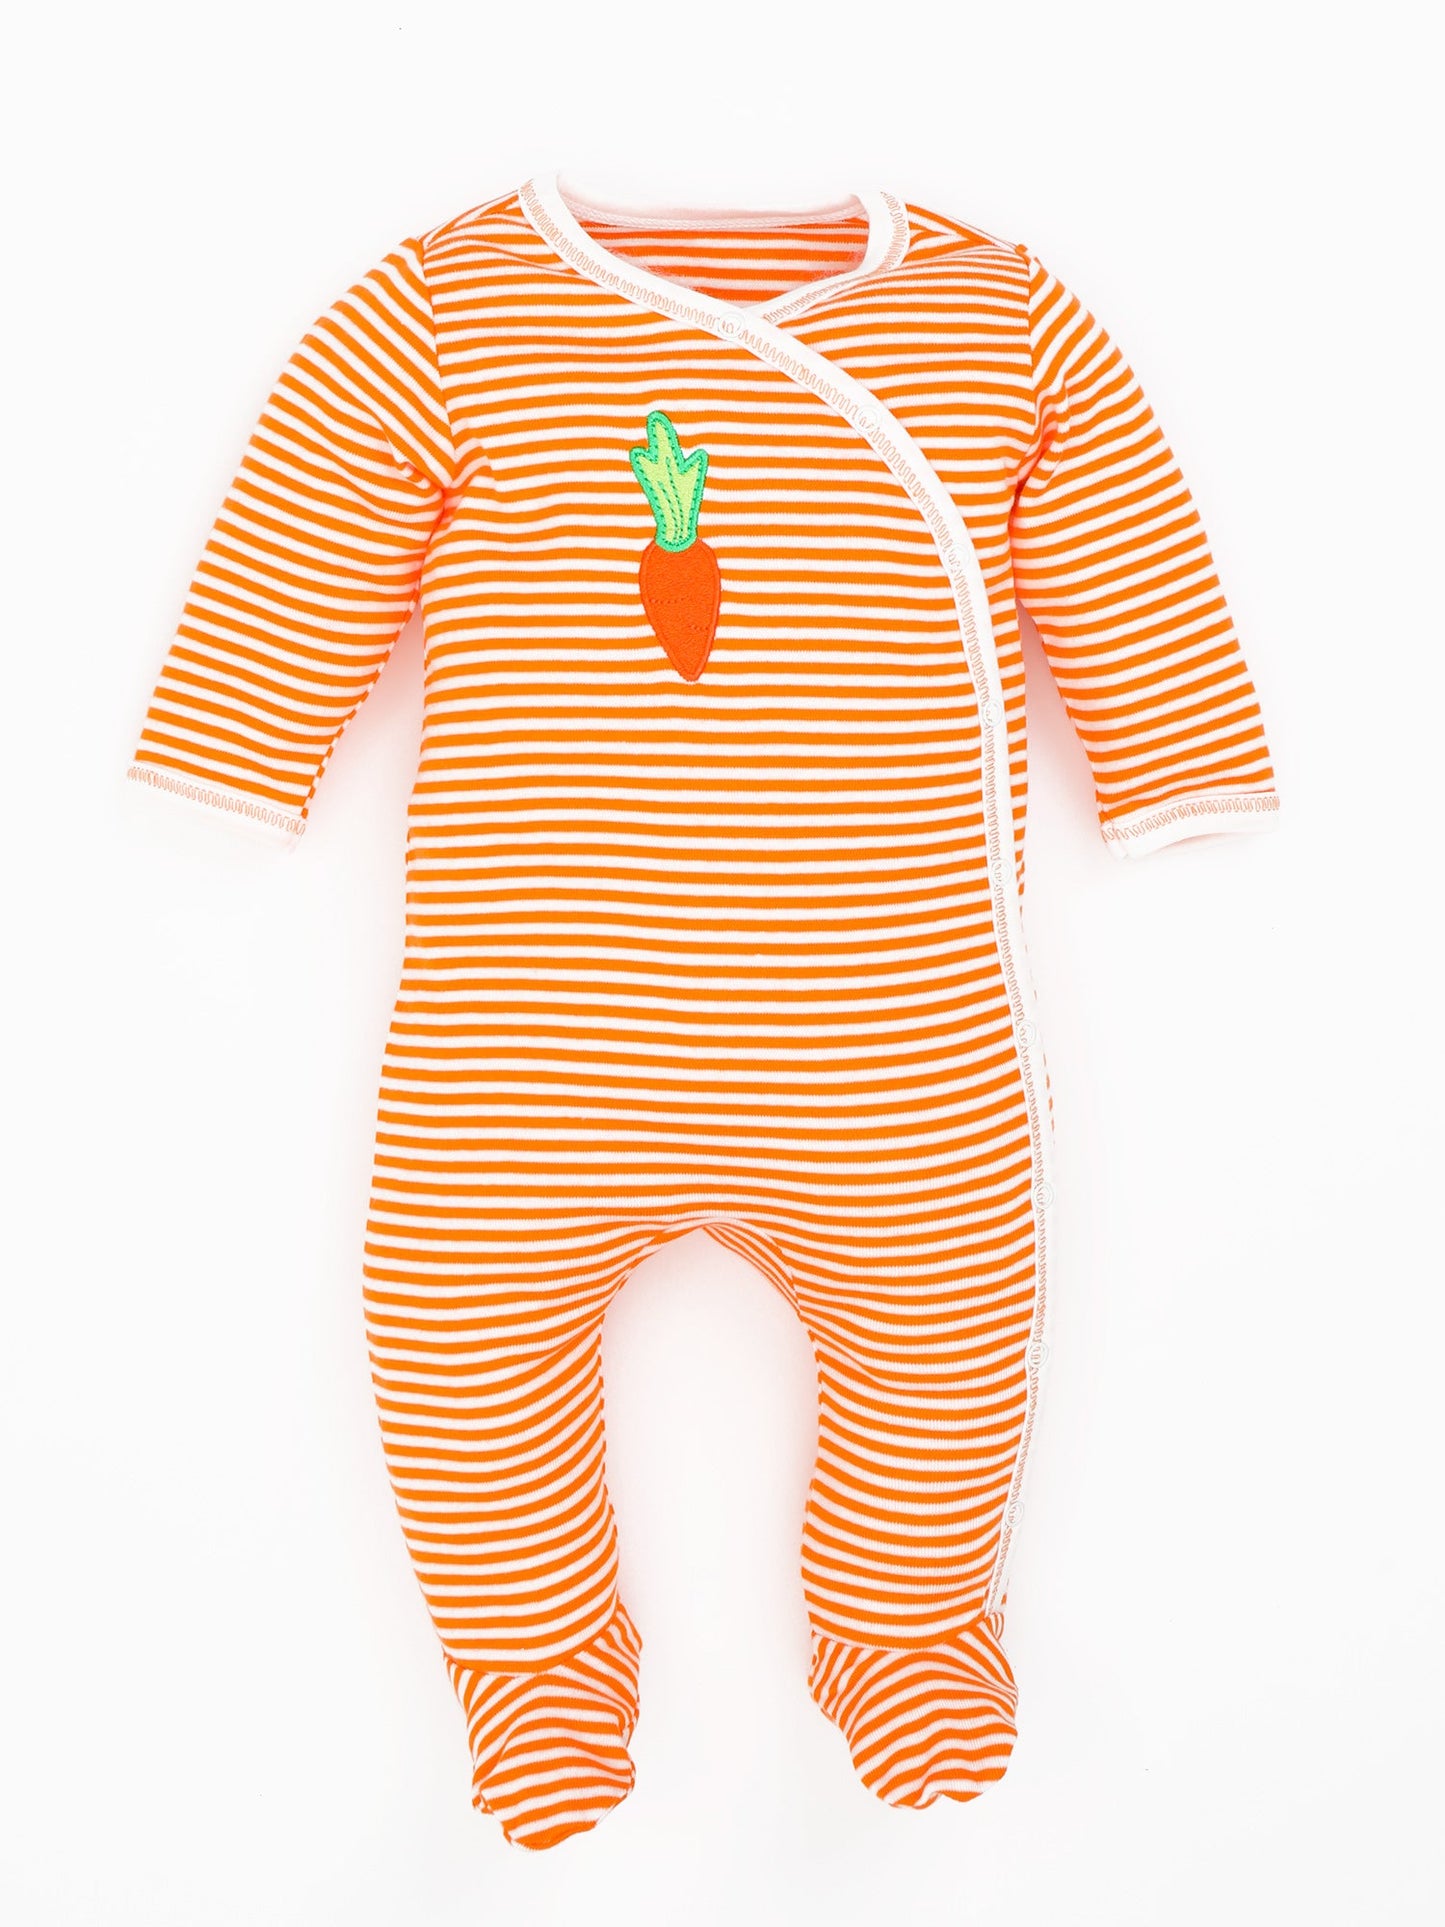 Side Snap Footie - Orange Stripe w/ Carrot Embroidery